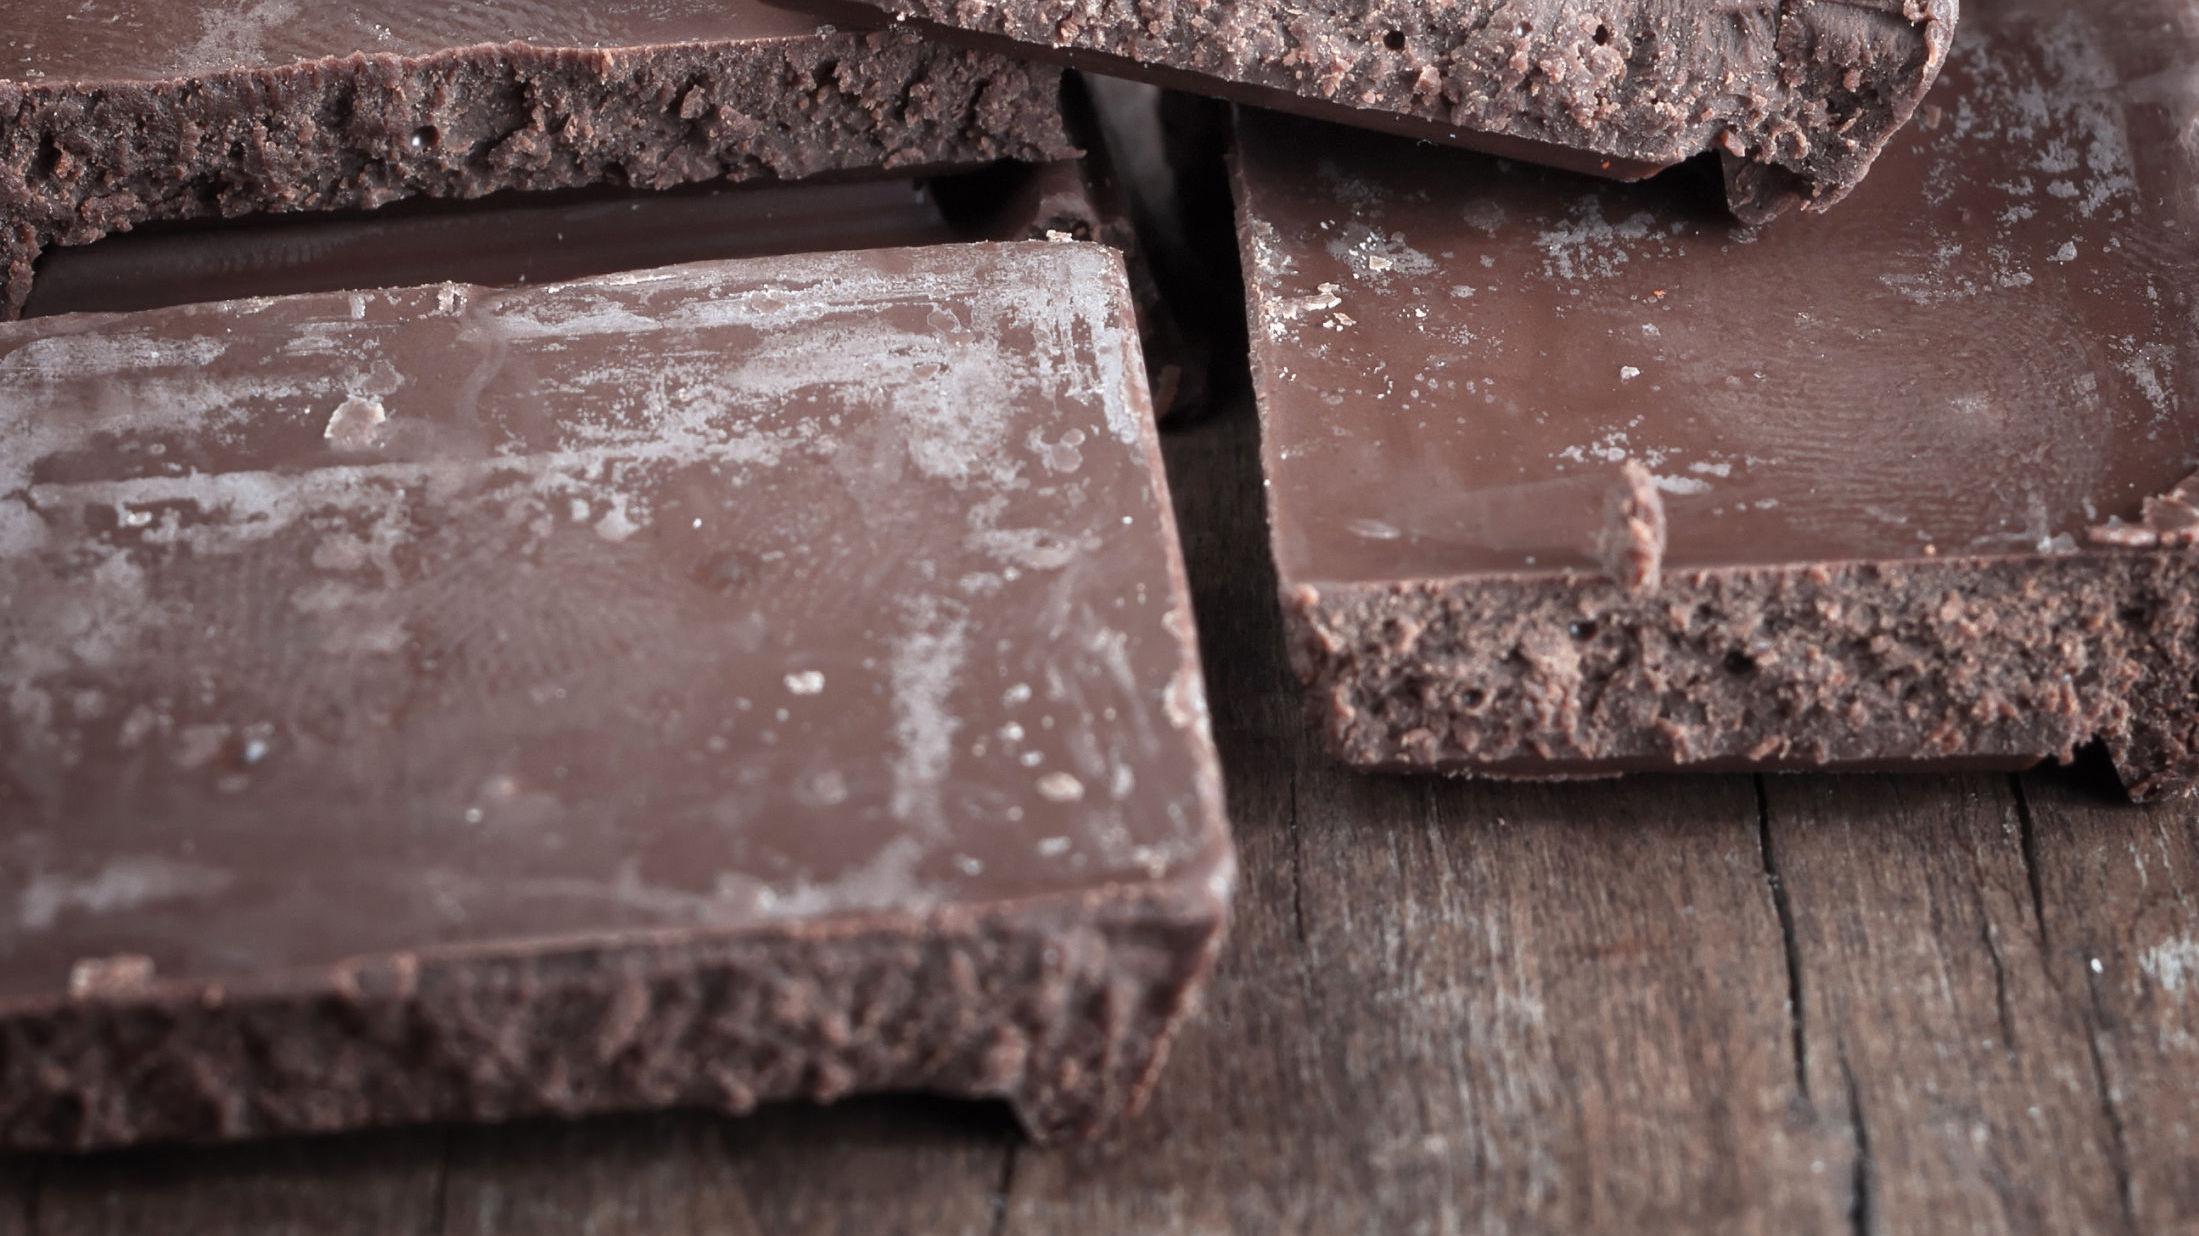 KJENT SYN: Hvis du har åpnet en sjokolade og den har sett slik ut, har temperaturen i rommet sannsynligvis vært for høy på et tidspunkt. Foto: Shutterstock